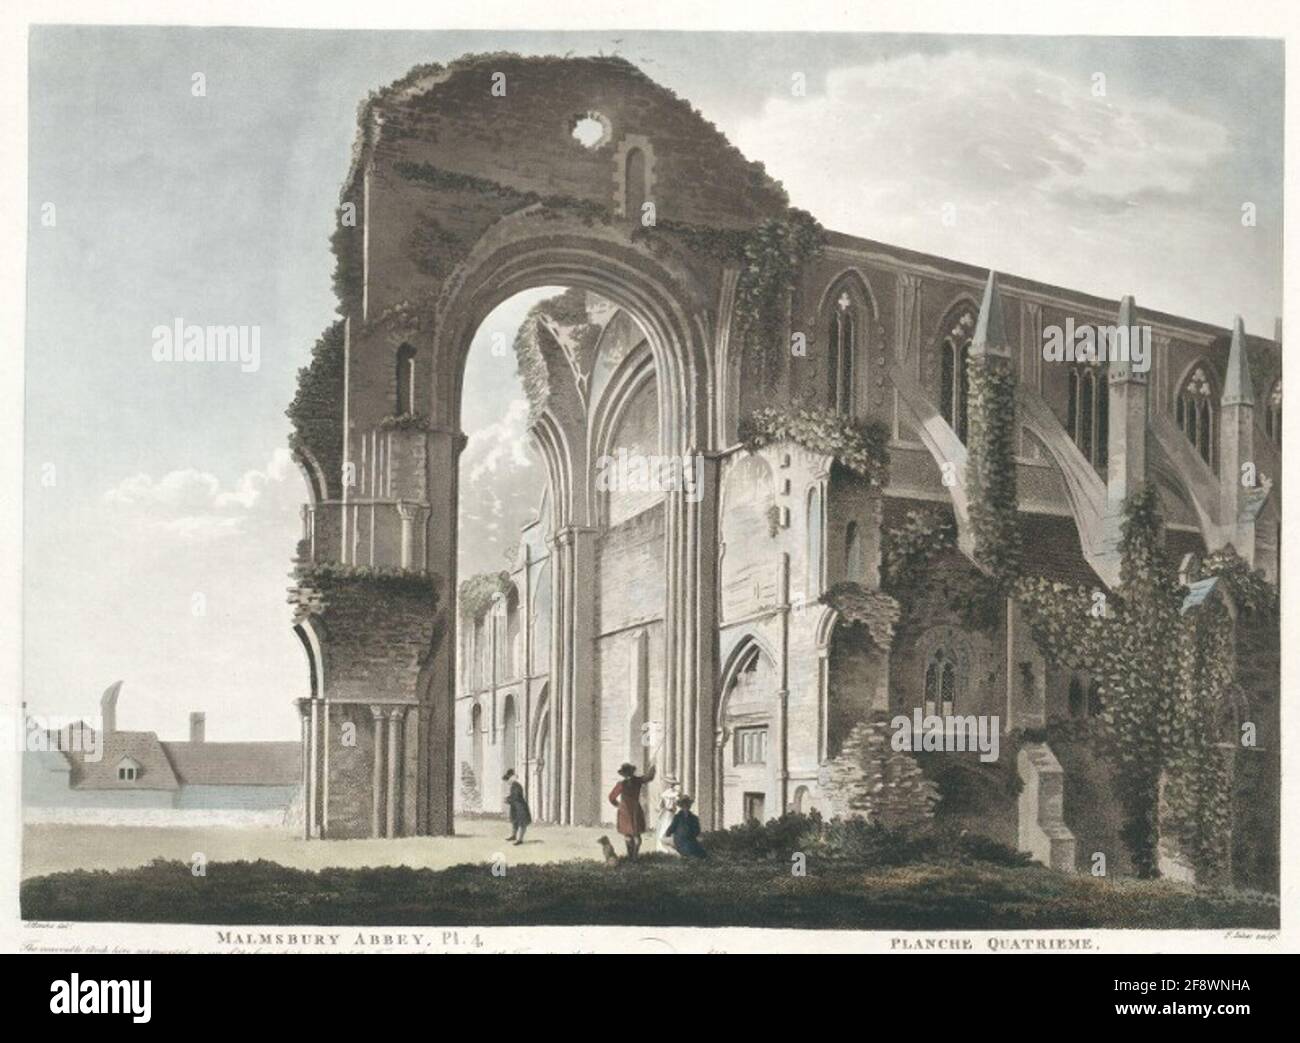 Malmsbury Abbey, Pl. 4. Planche Quatrieme Beschreibung der Ansicht in Engl. U. franz. Sprache unter dem Titel Stockfoto